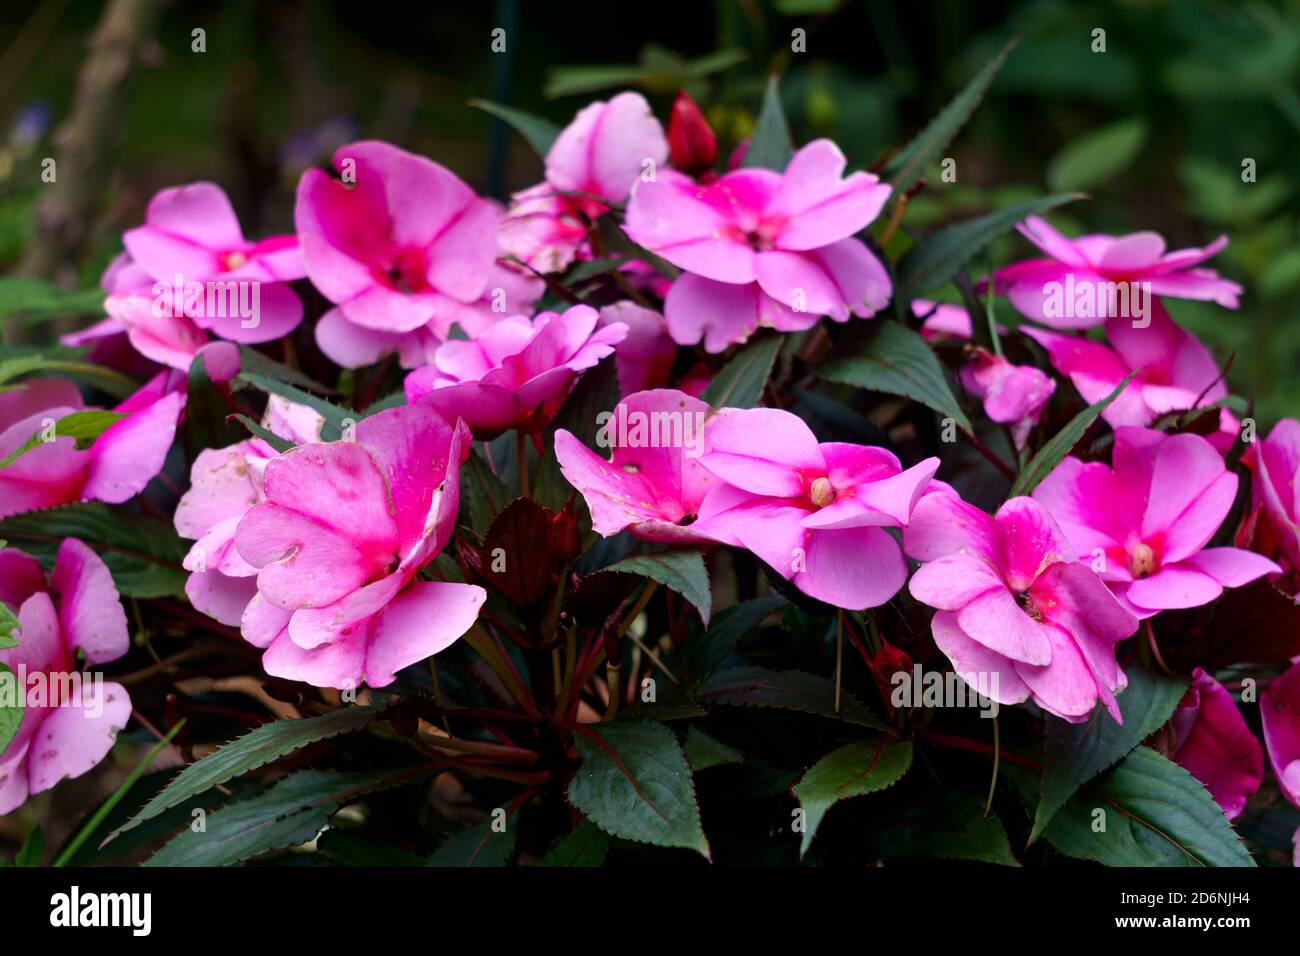 Rosa schöne Blüten von Balsam auf dunklem Grund. Stockfoto